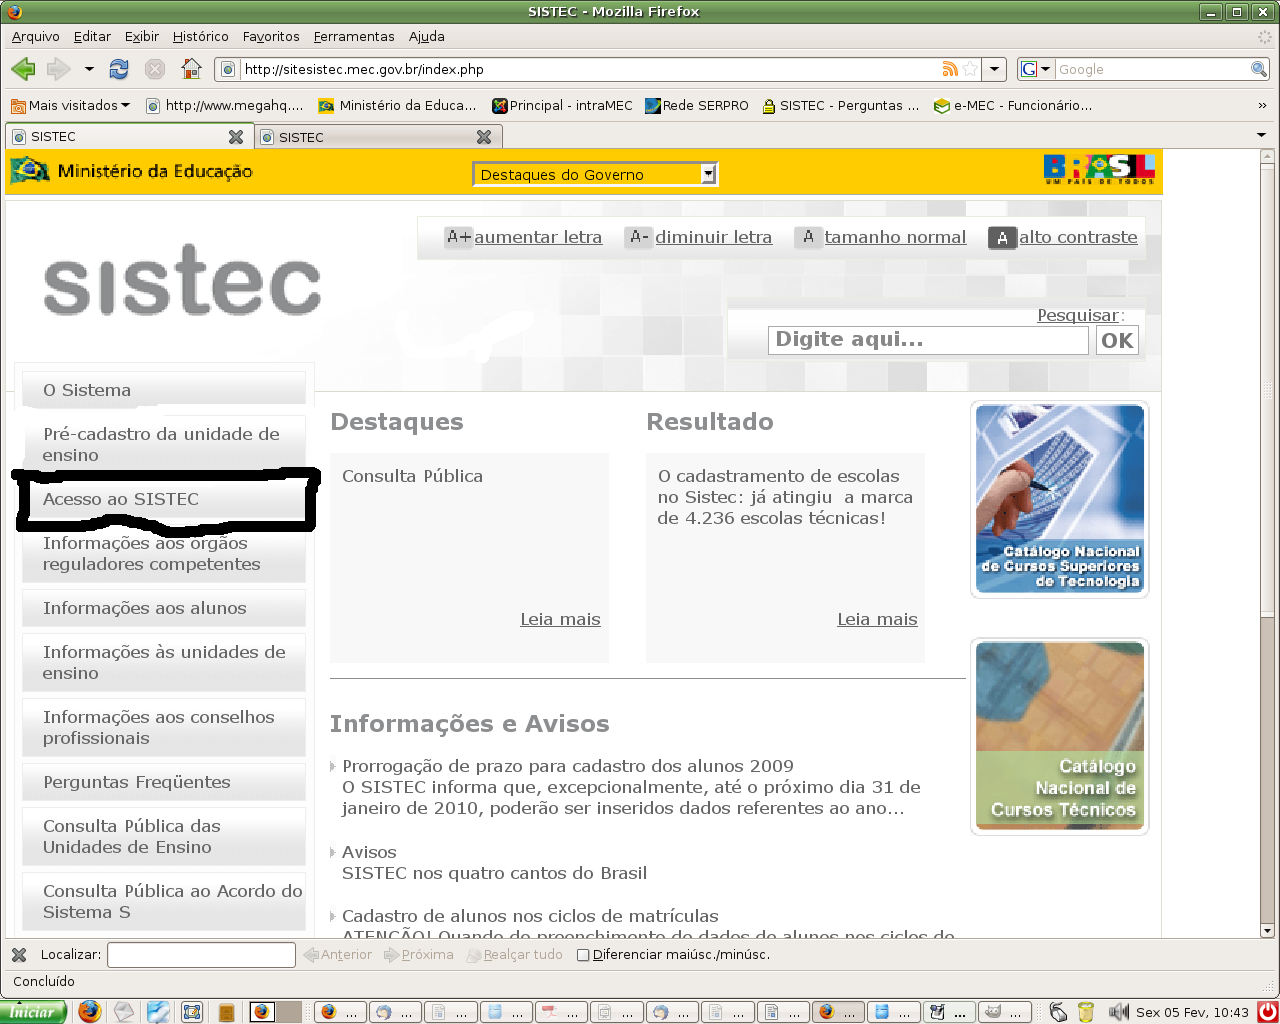 ACESSO AO SISTEMA Para acessar o sistema digite portal.mec.gov.br/sistec (sem www) no Navegador MOZILLA FIRE FOX e clique em acesso ao SISTEC.